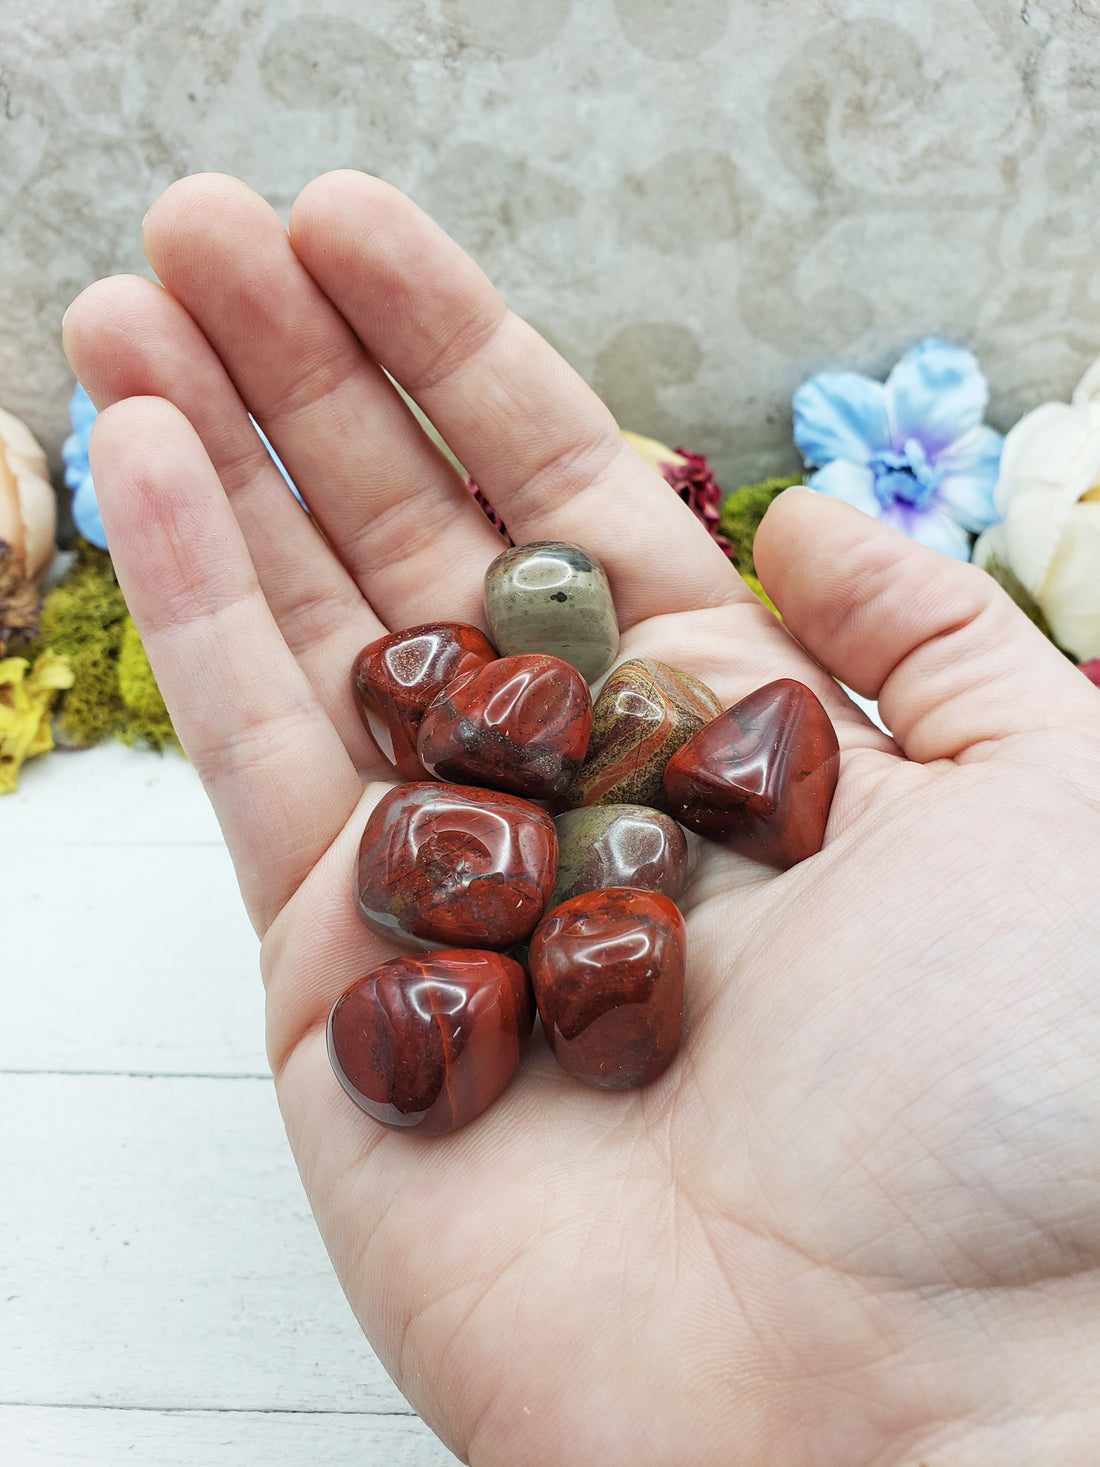 rainbow jasper stones in hand